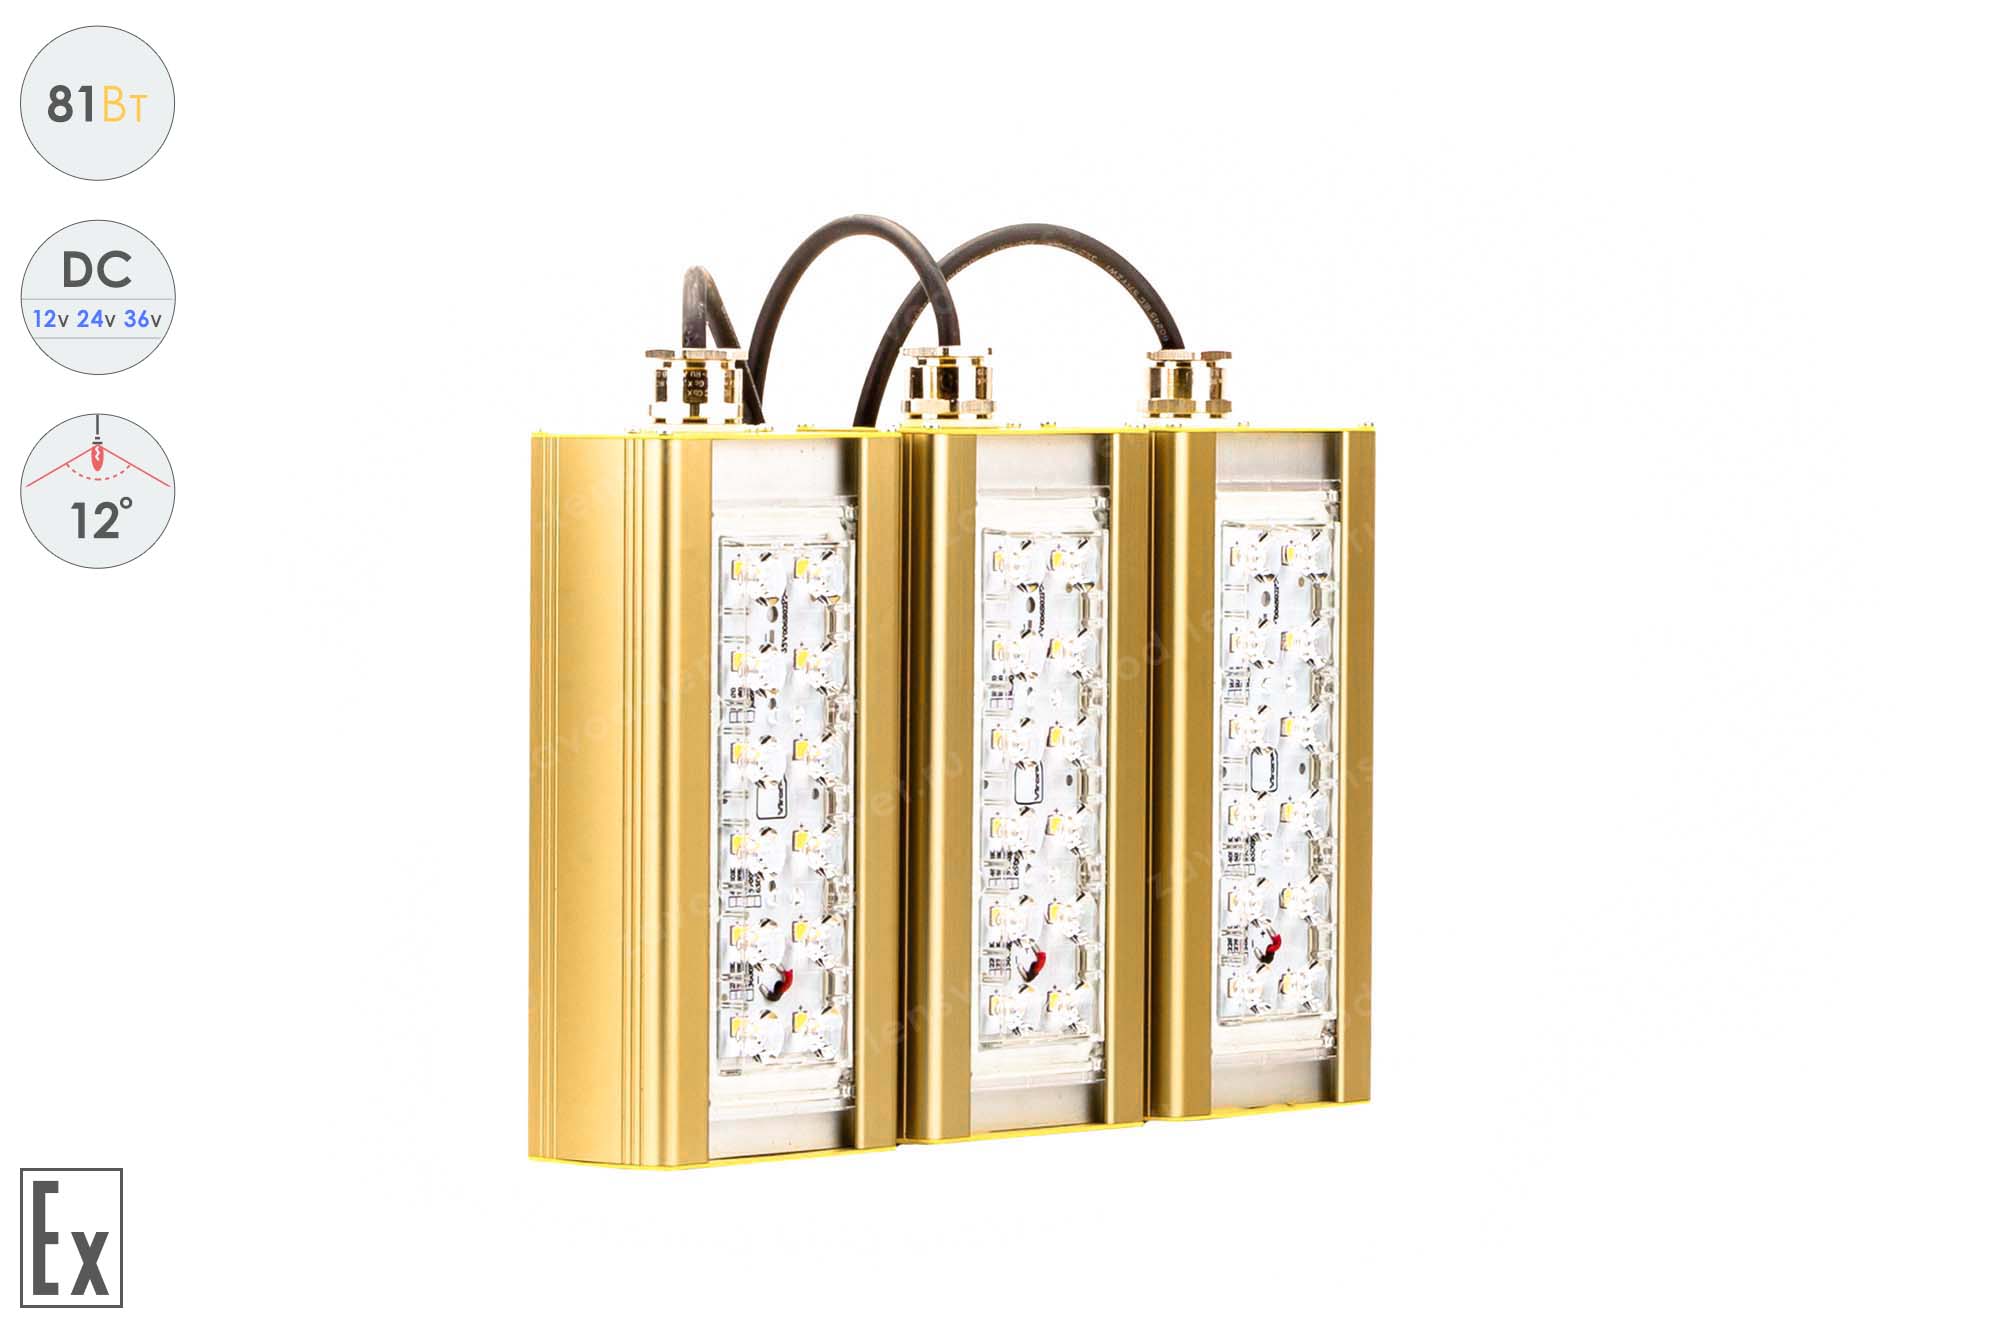 Низковольтный светодиодный светильник Прожектор Взрывозащищенный GOLD, консоль K-3 , 81 Вт, 12° 